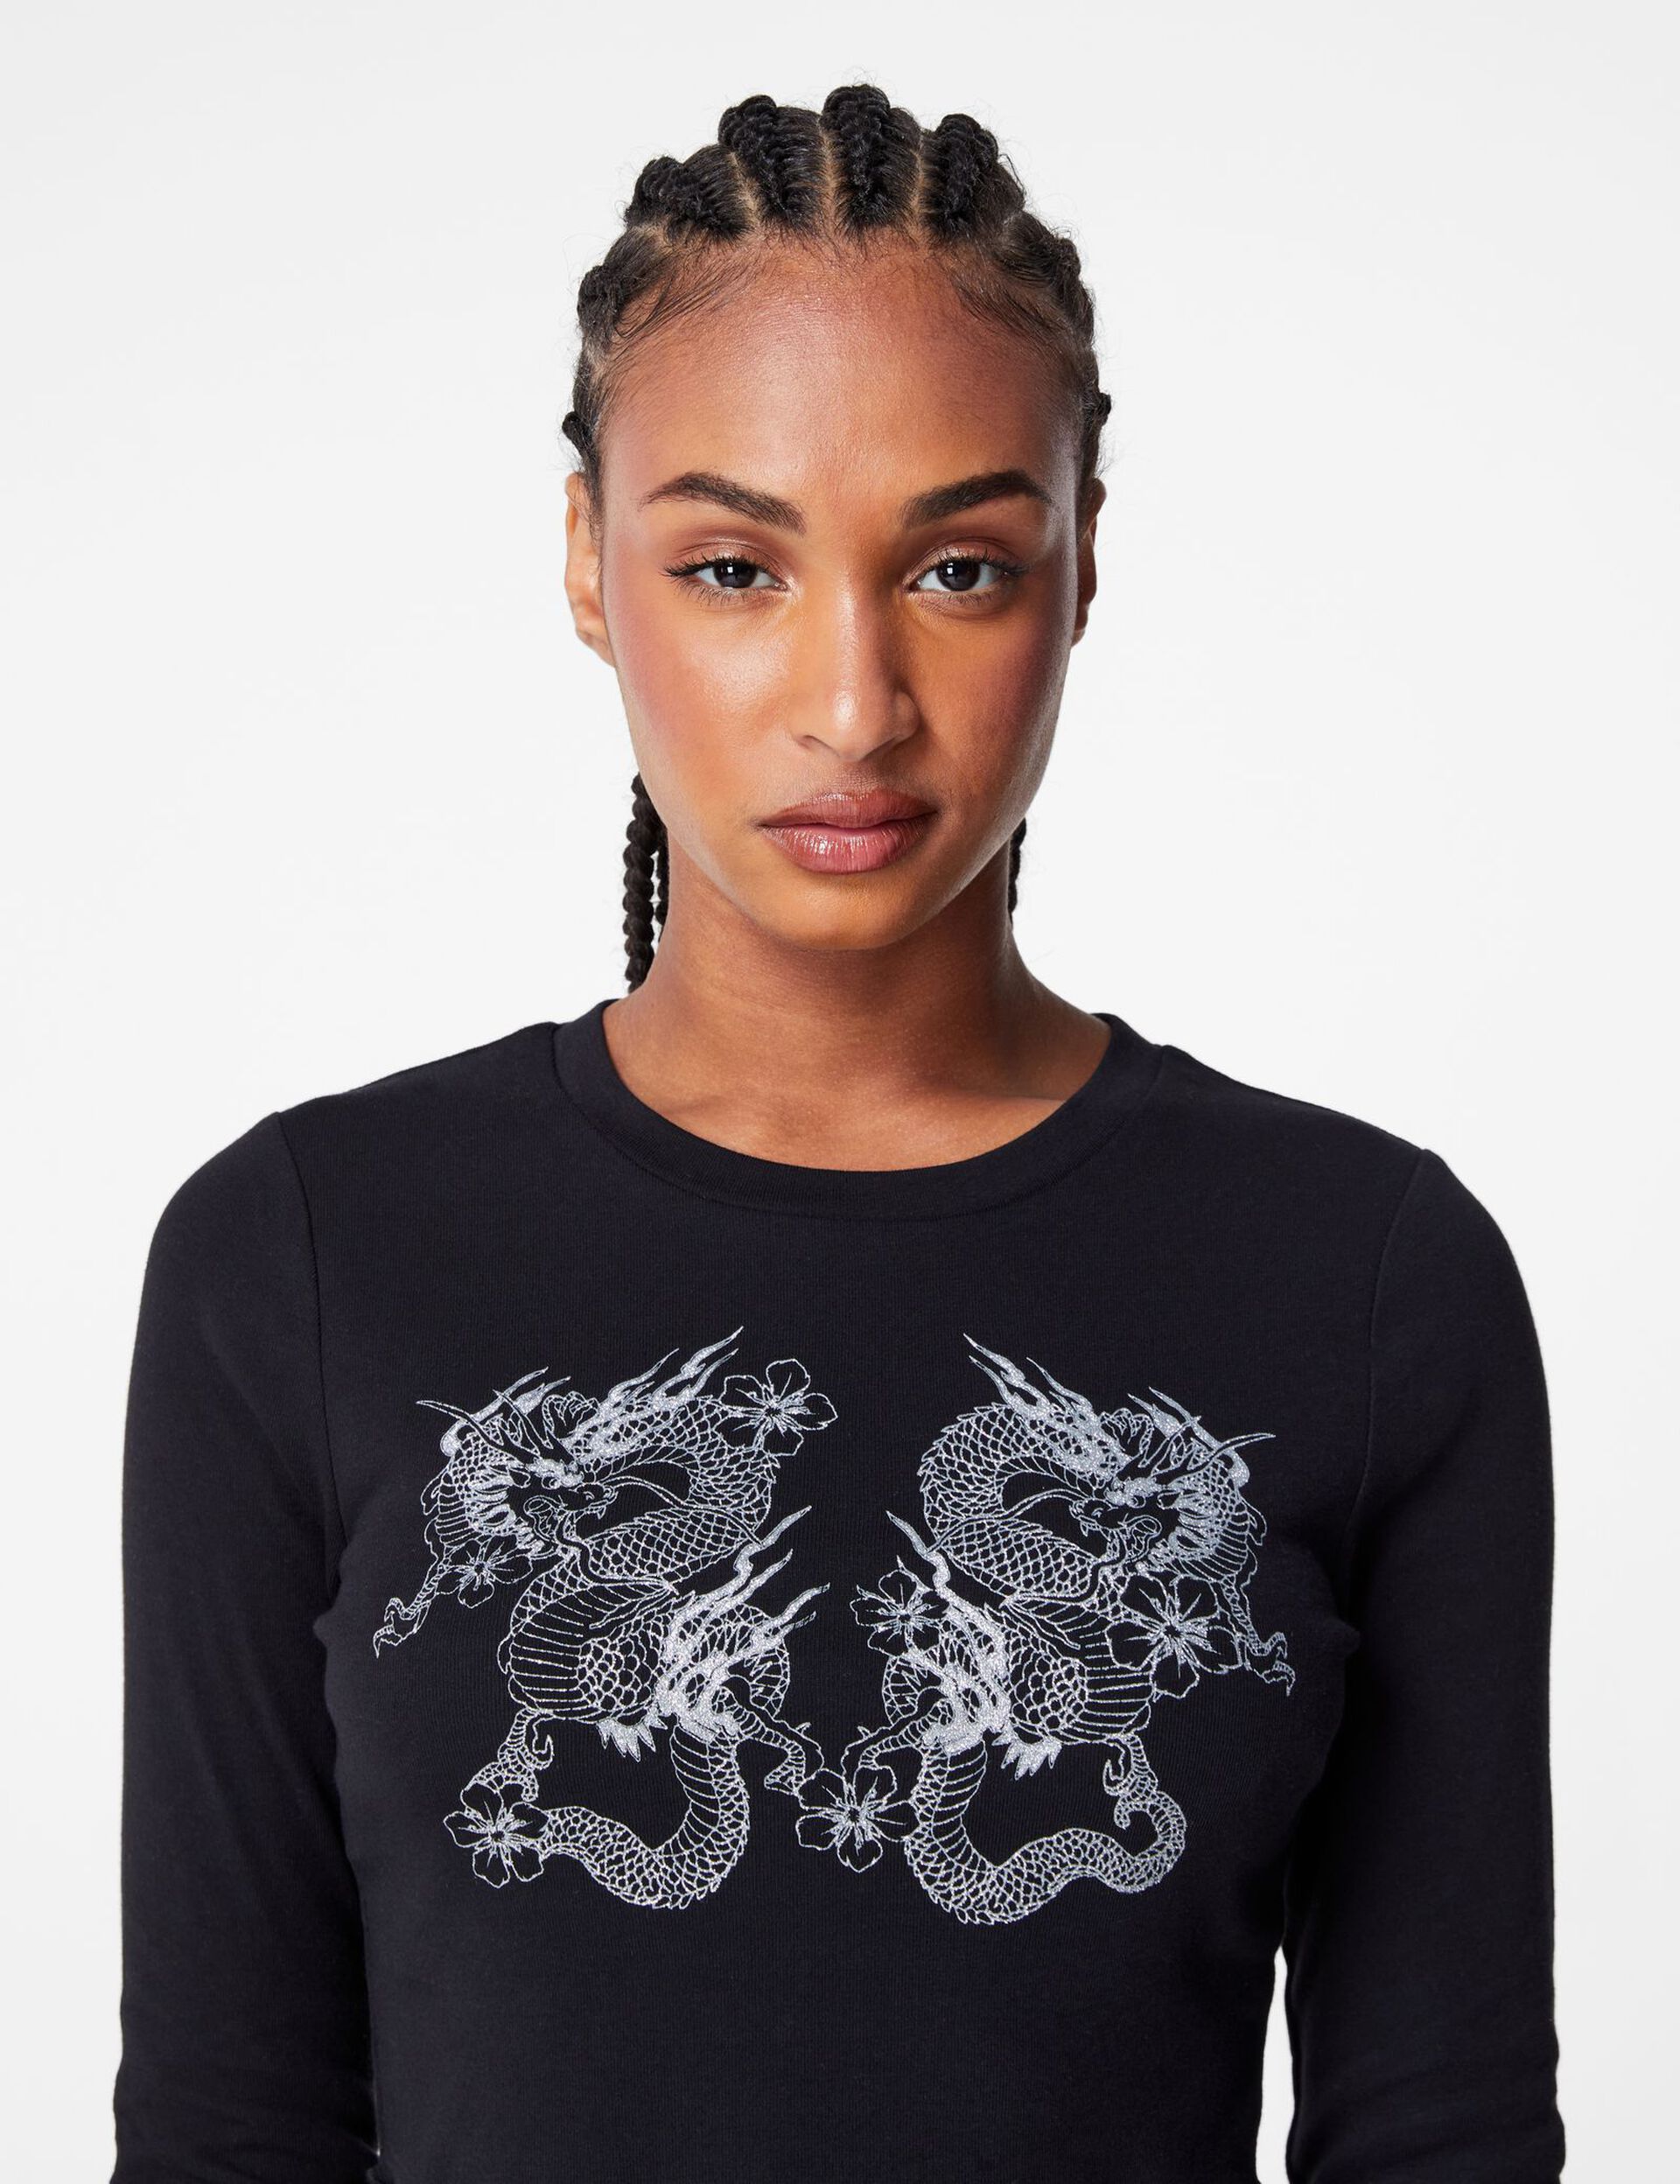 Tee-shirt noir avec dragon pailleté argenté 